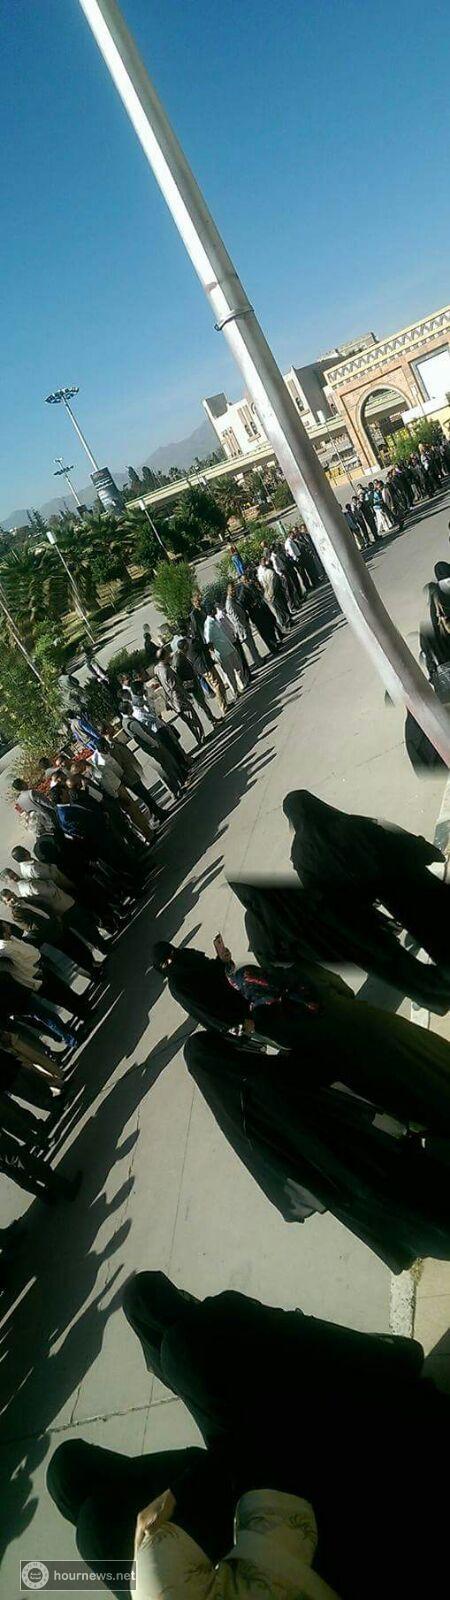 بالصور: لحظات استقبال موظفو البنك المركزي اليمني لبن همام بحفاوة كبيرة عند وصوله